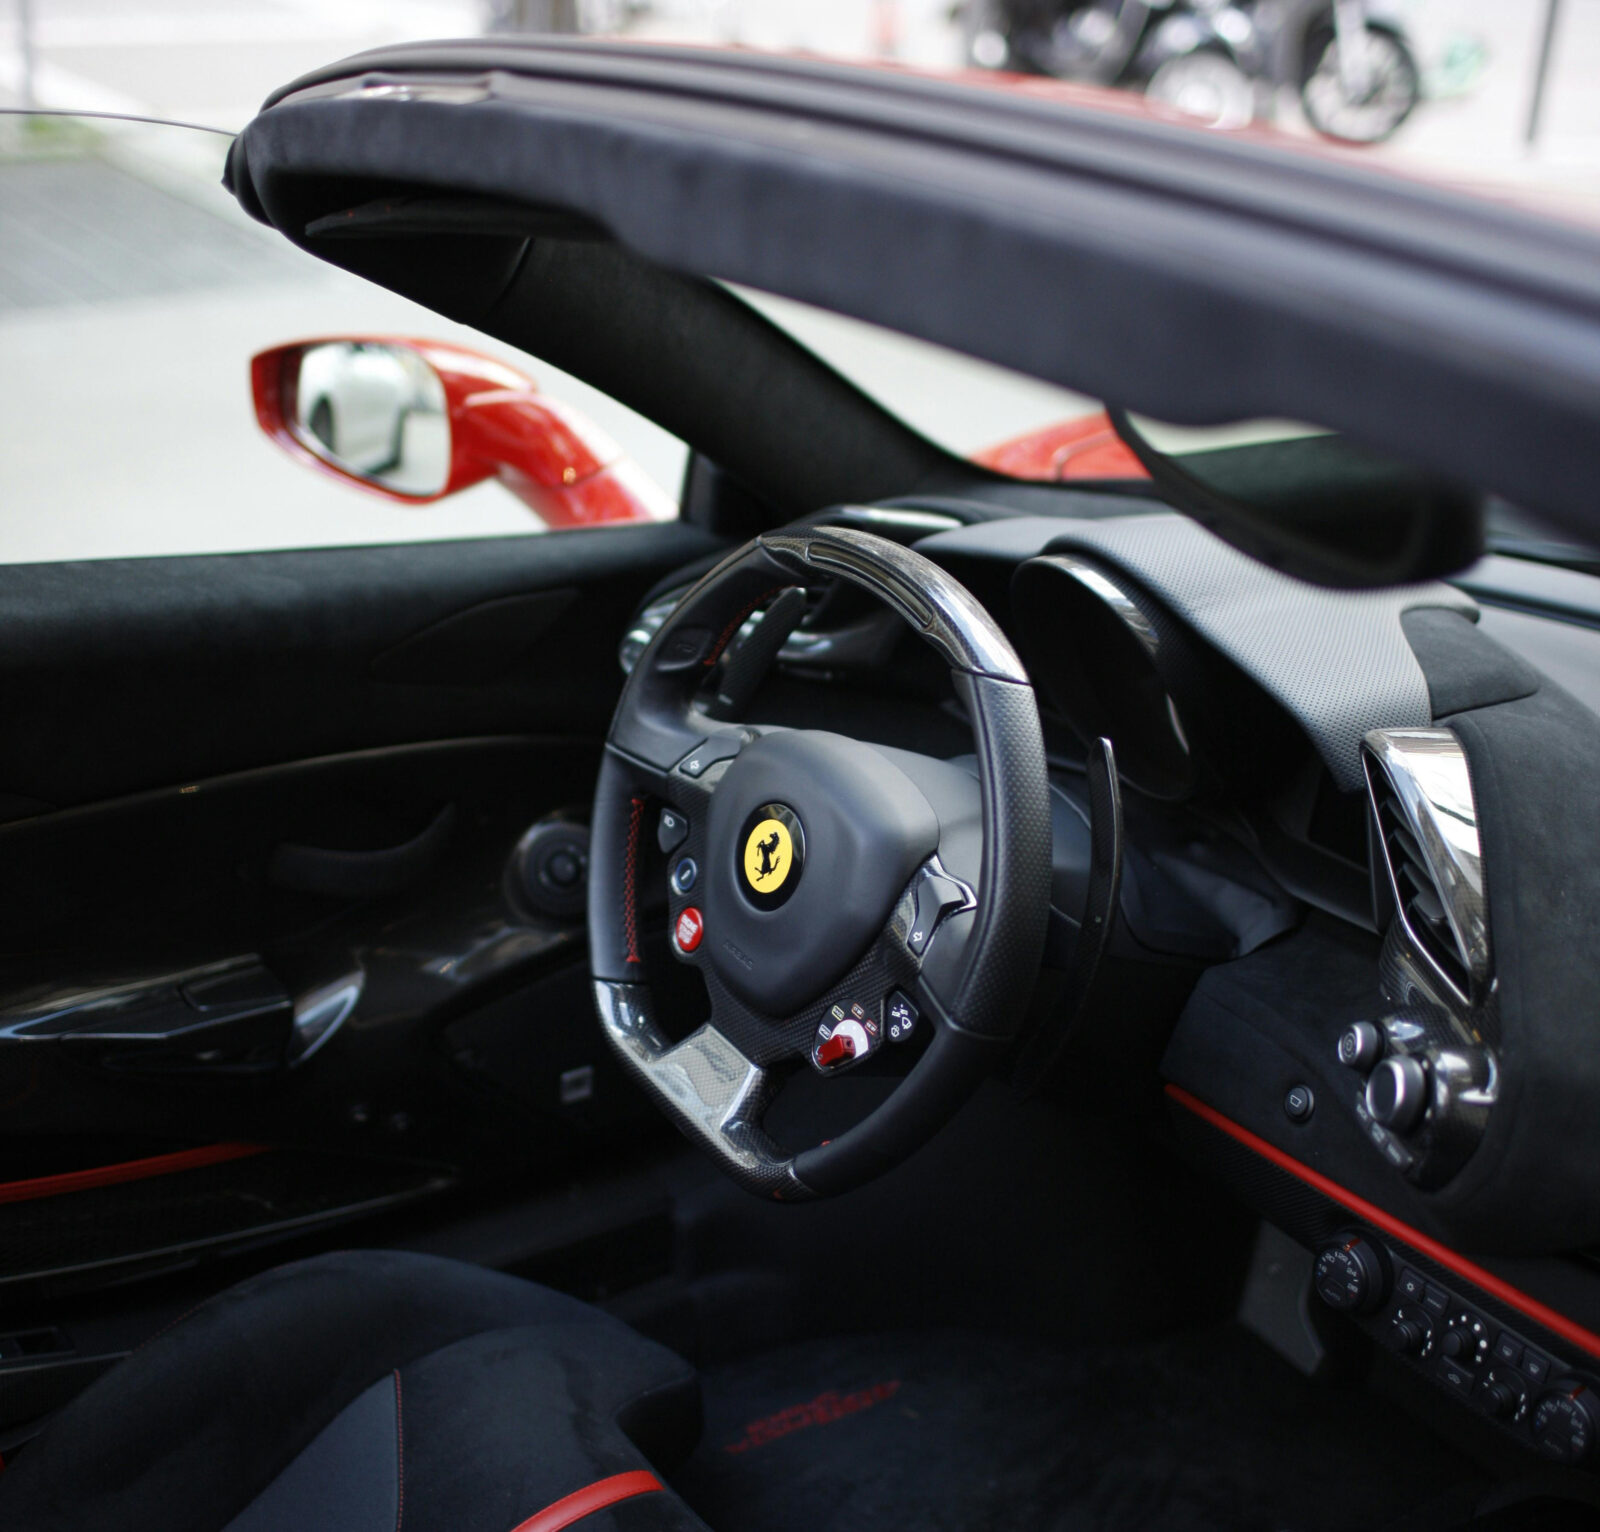 Ultra HD Ferrari car background